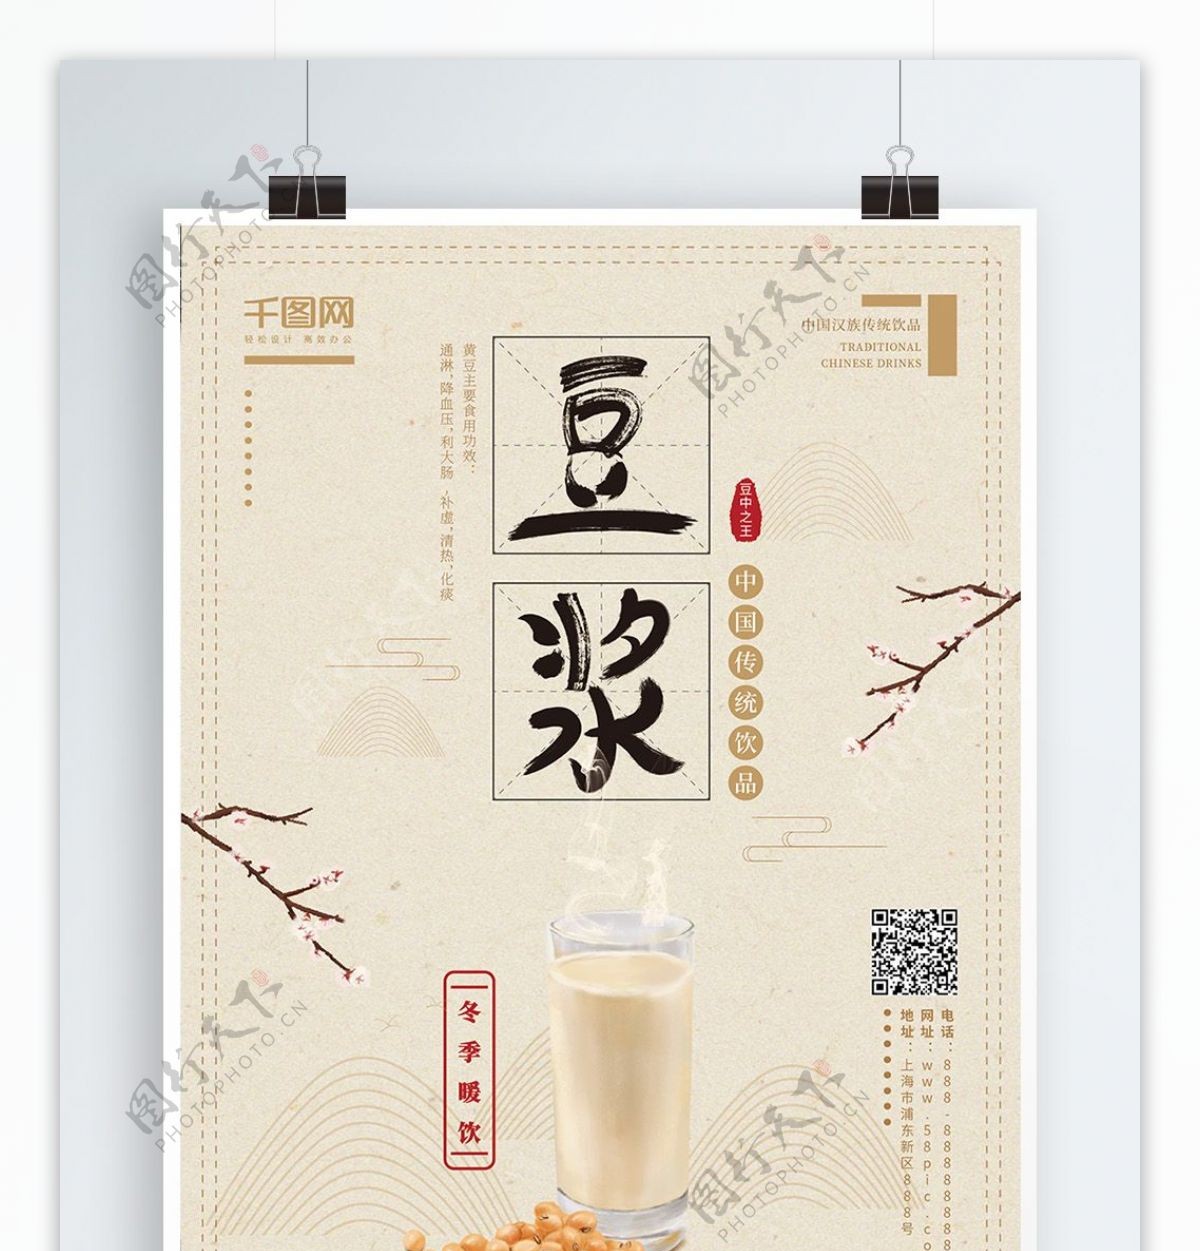 原创手绘淡雅中国风冬季热饮豆浆宣传海报